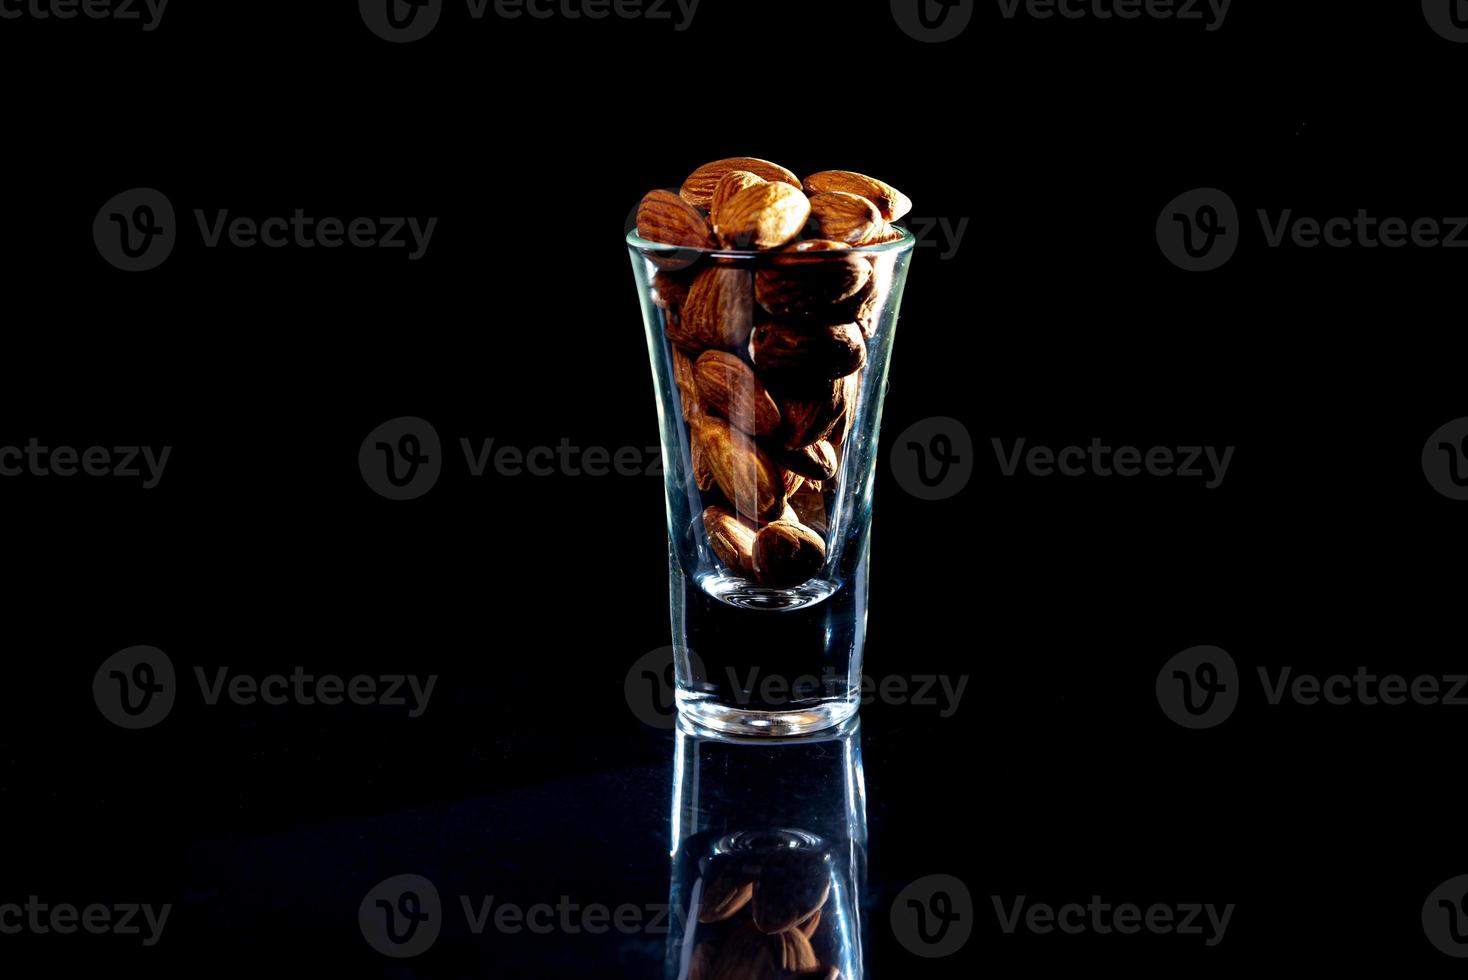 almendra pelada en un cubo de copa de vino sobre un fondo negro aislado. fila de tazones con nueces almendras, vista frontal. foto